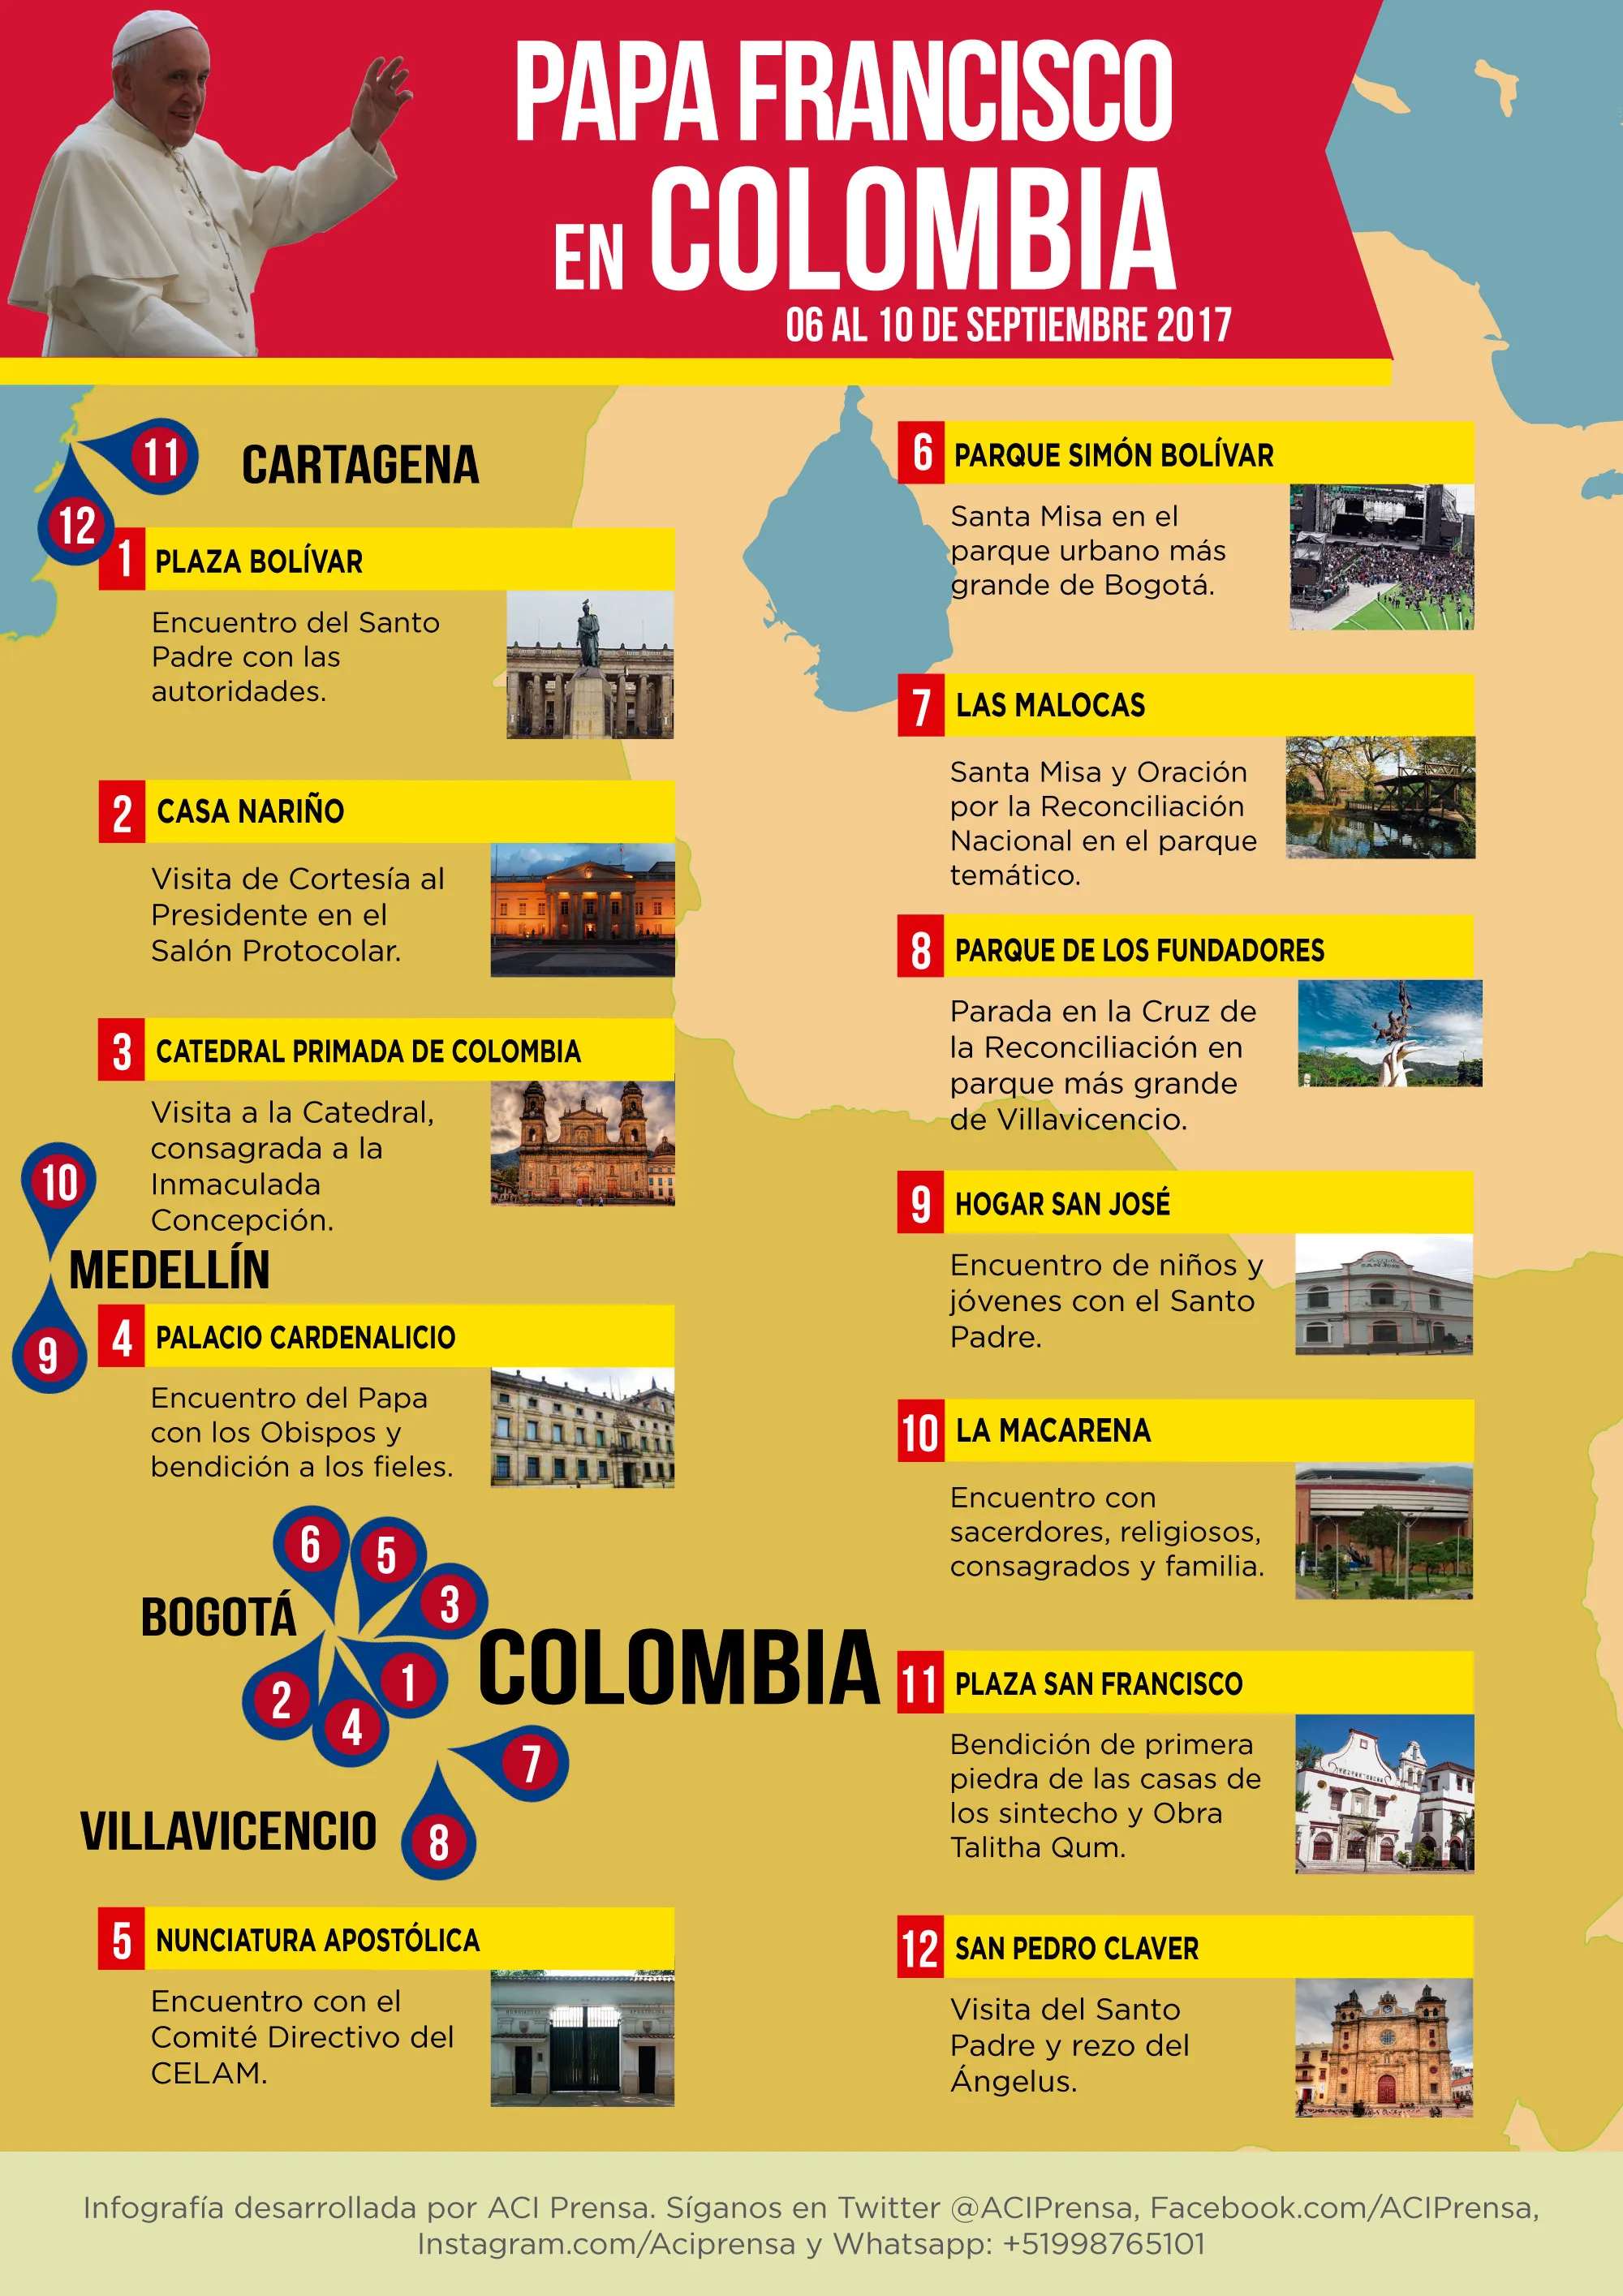 [INFOGRAFÍA] Itinerario para la visita del Papa Francisco a Colombia